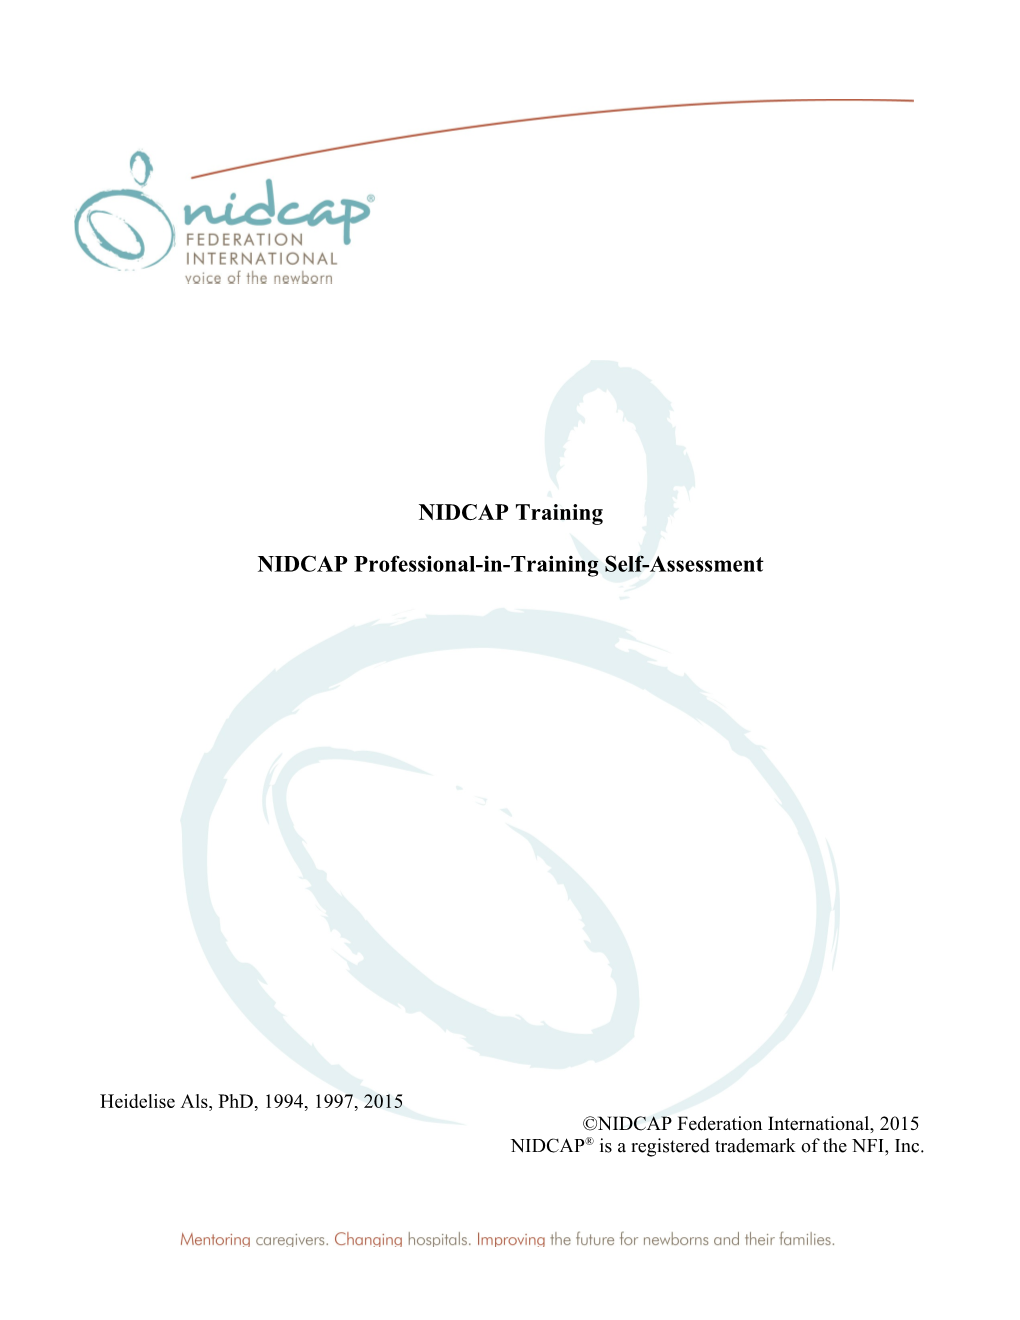 NIDCAP Training: NIDCAP Professional-In-Training Self-Assessment 1